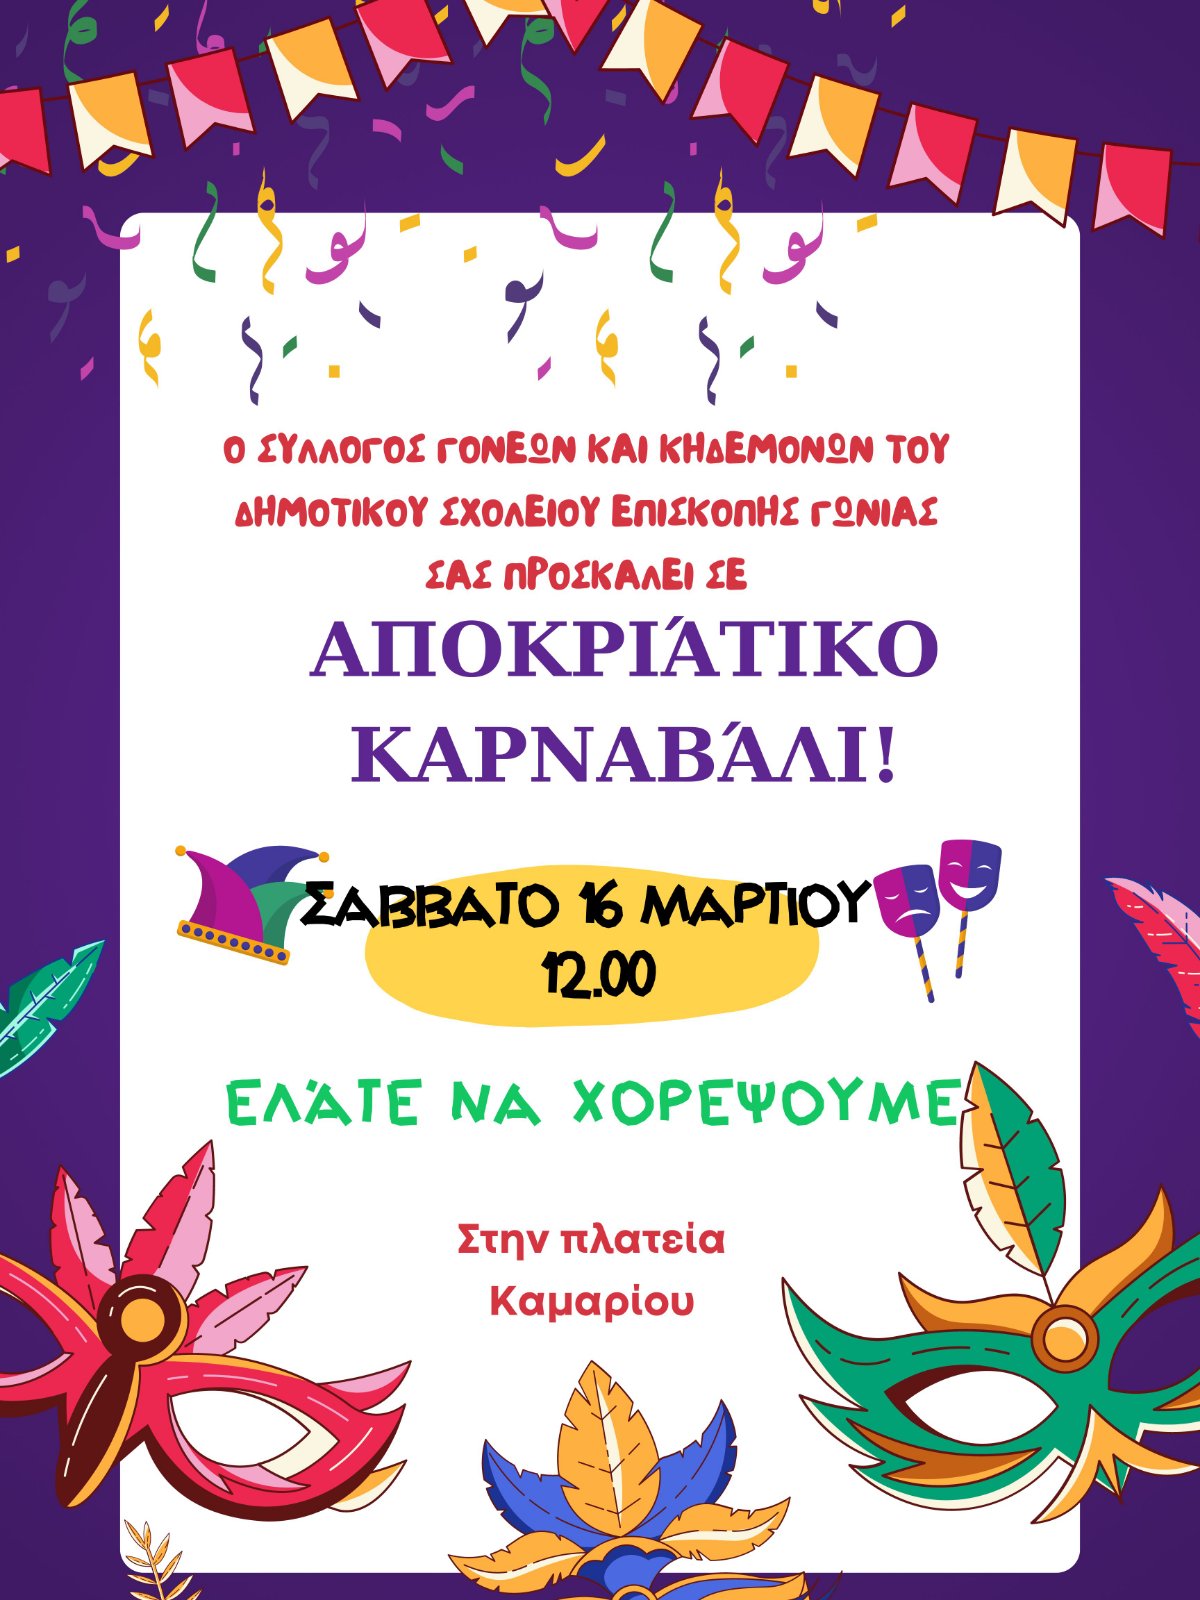 Καρναβάλι διοργανώνει ο Σύλλογος Γονέων του Δημοτικού Σχολείου Επισκοπής Γωνιάς στις 16/3 στις 12.00